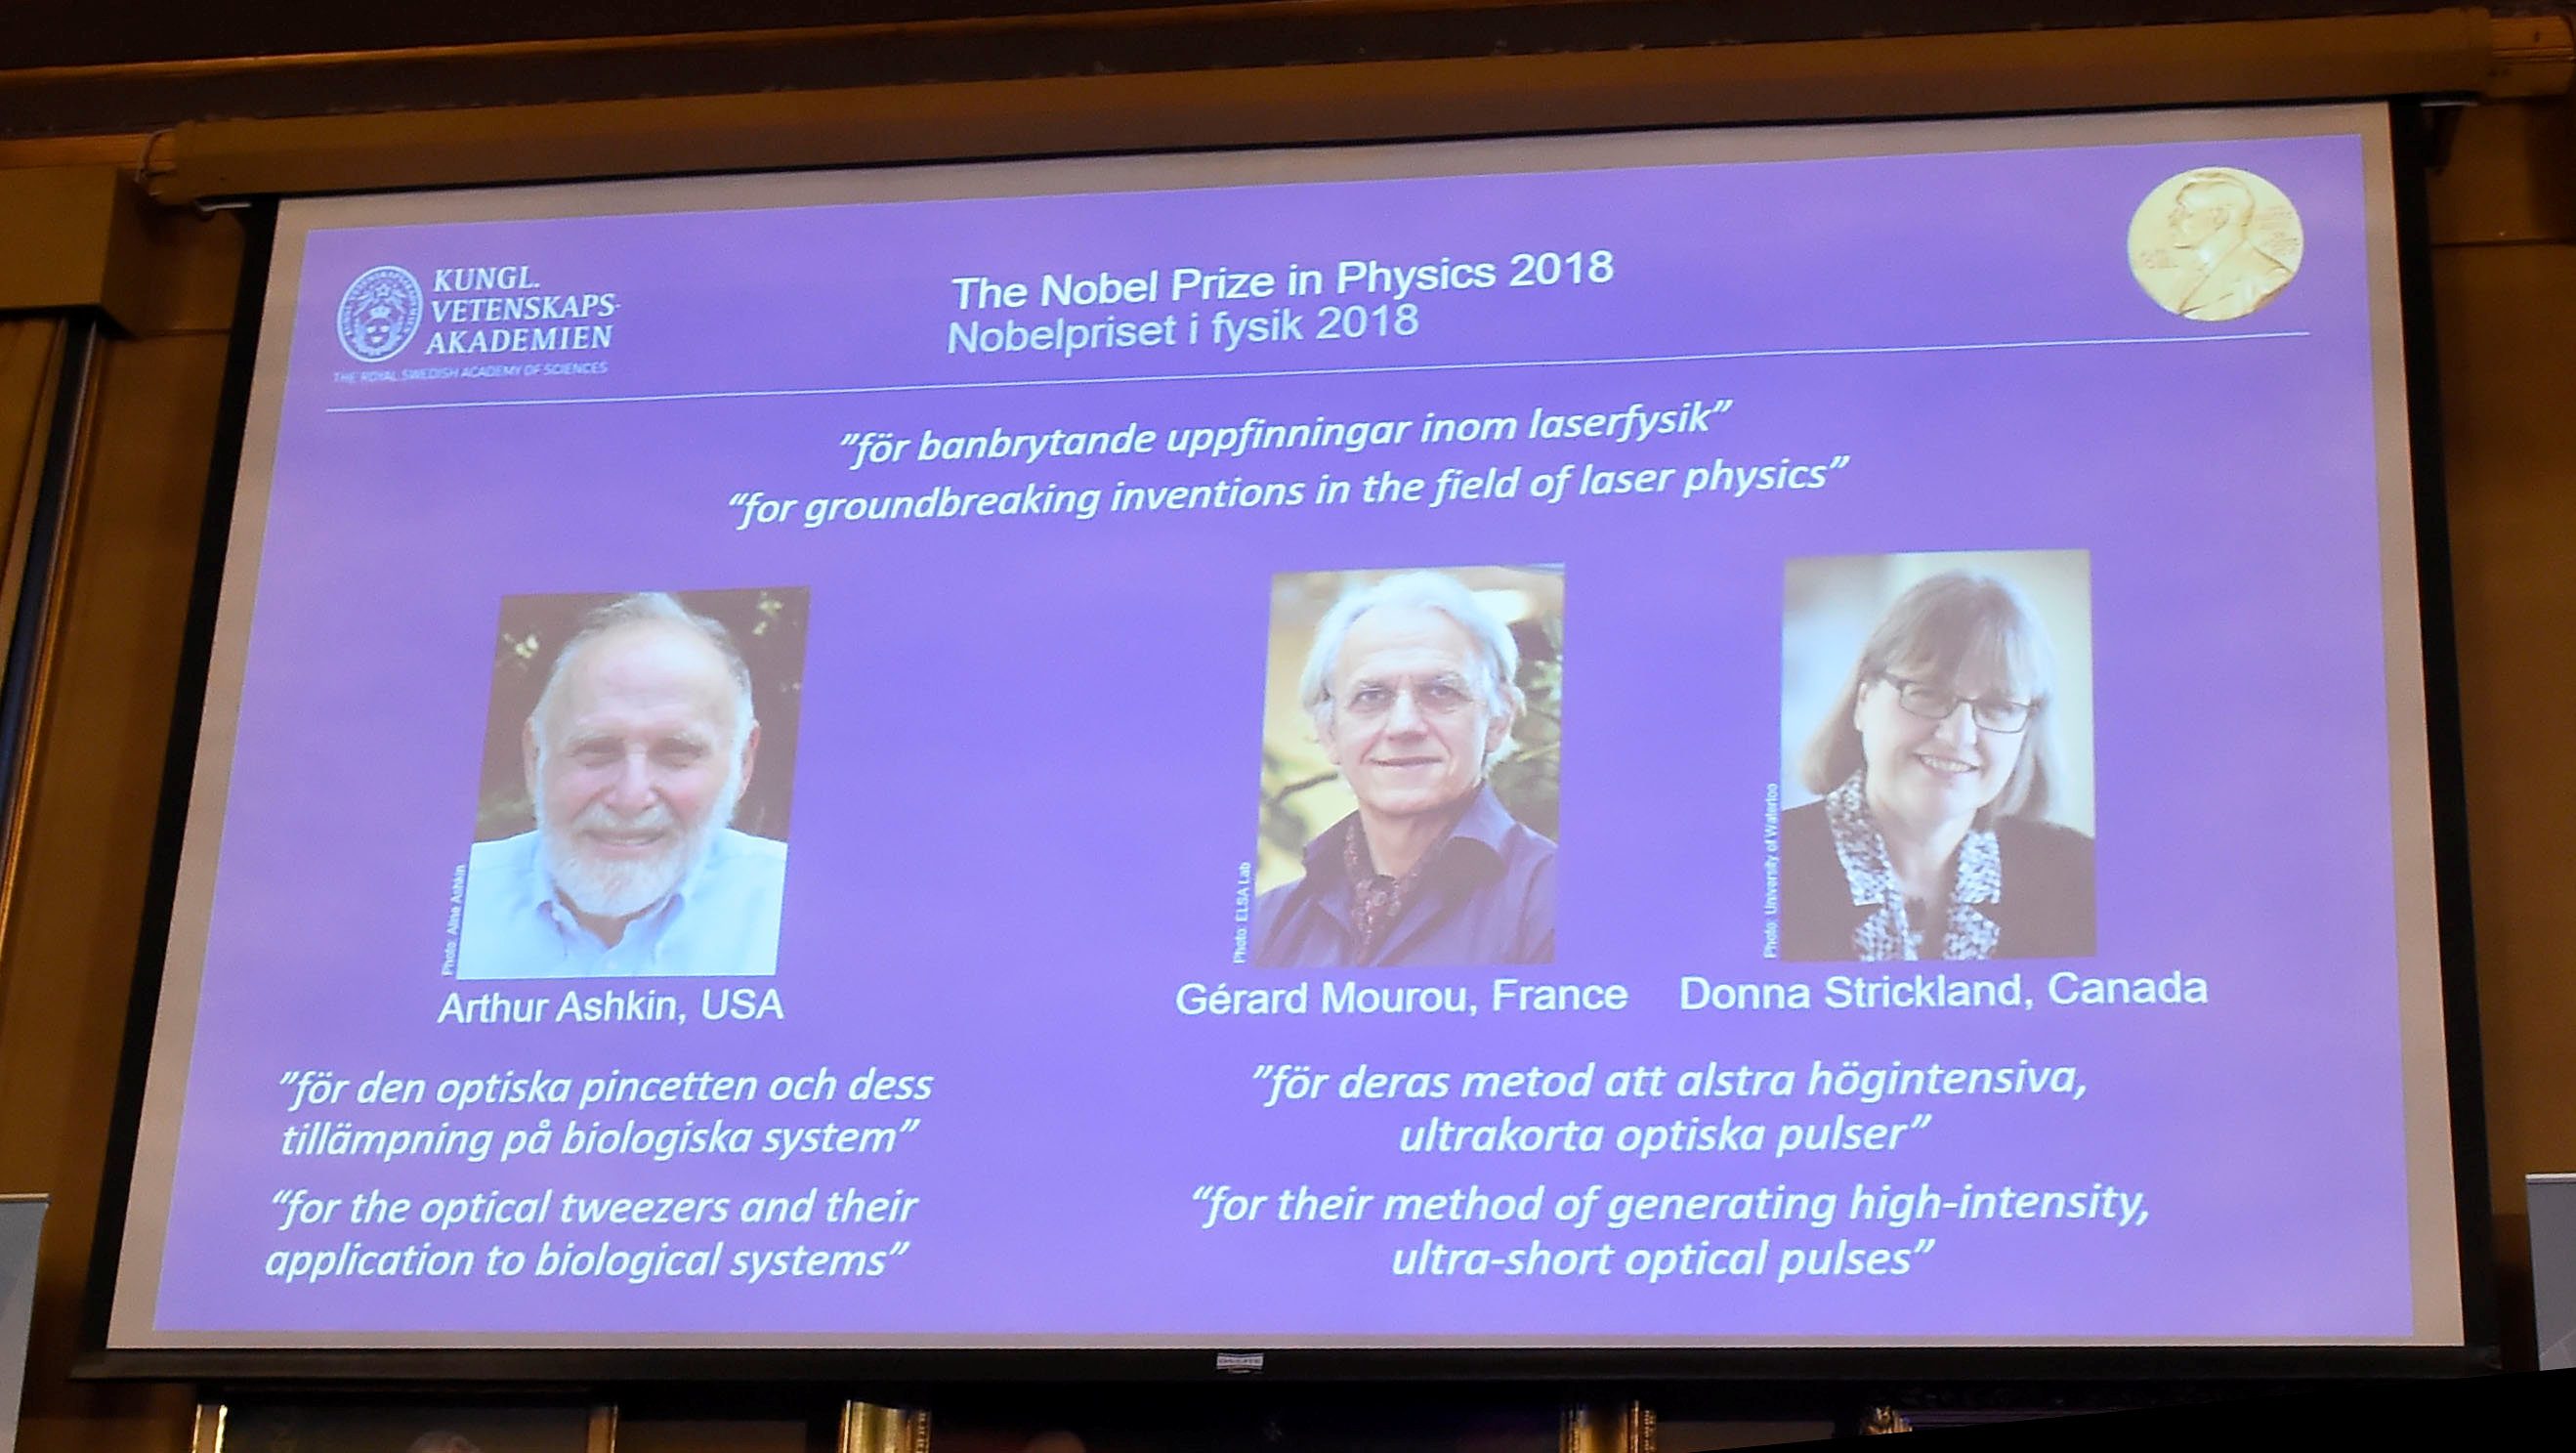 رويترز: الحاصلون على جائزة نوبل في الفيزياء 2018